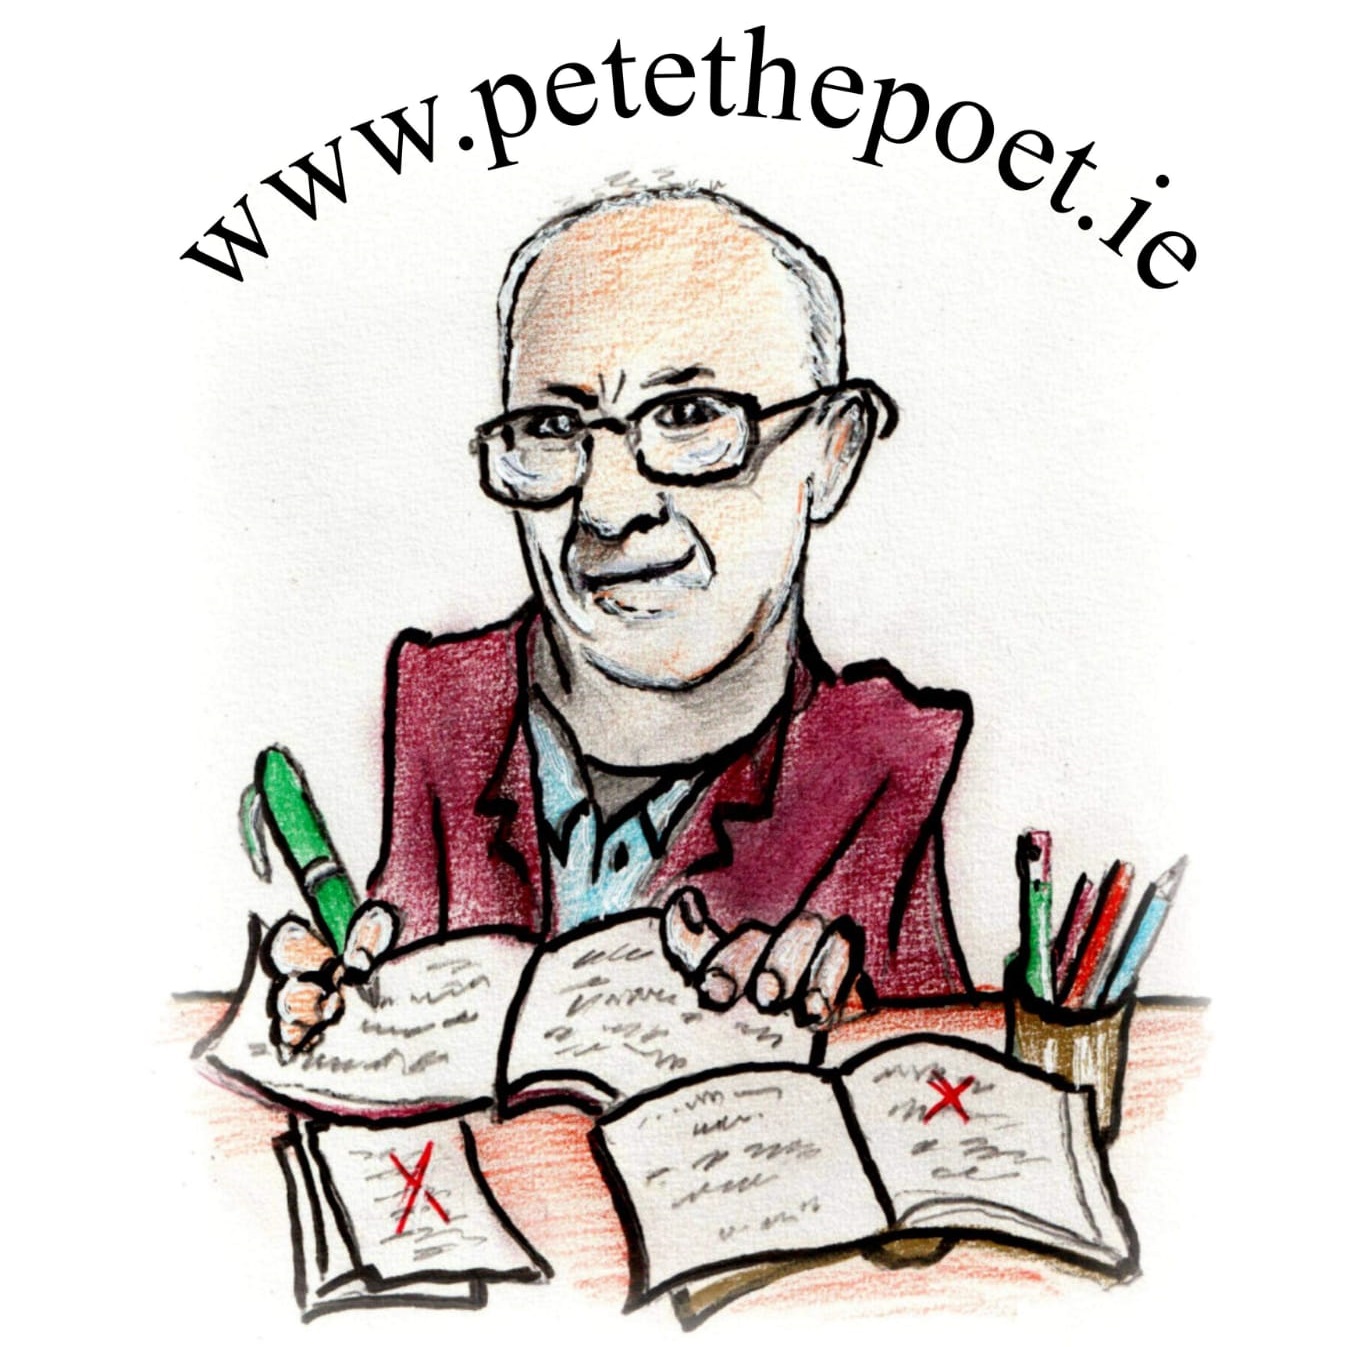 Pete the Poet